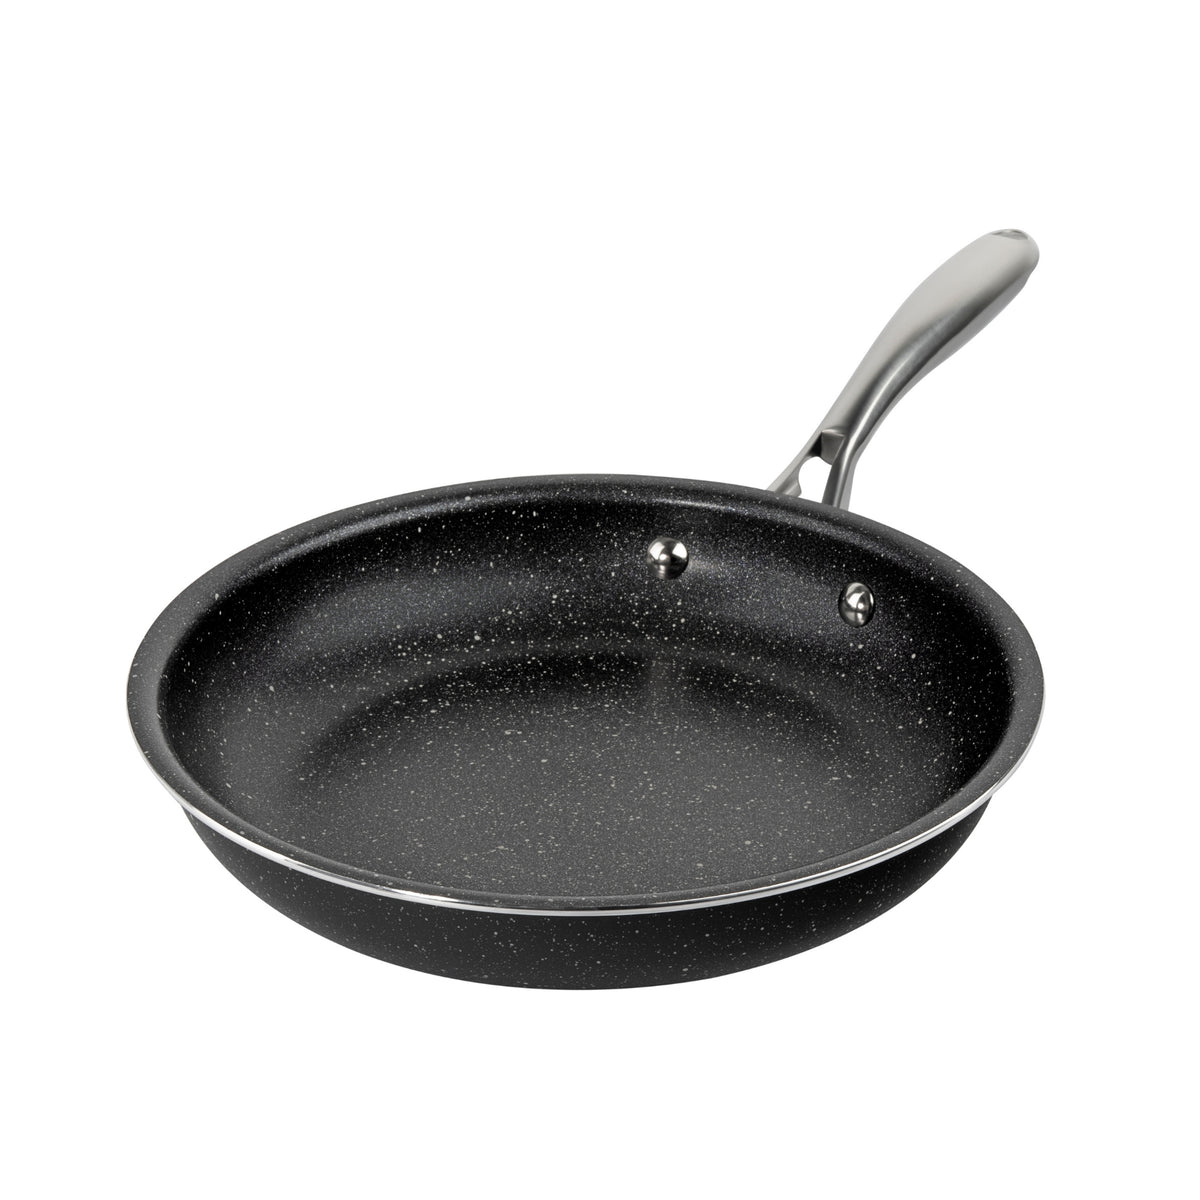 Premier Non-Stick Fry Pan Large | Buy Non-Stick Fry Pan